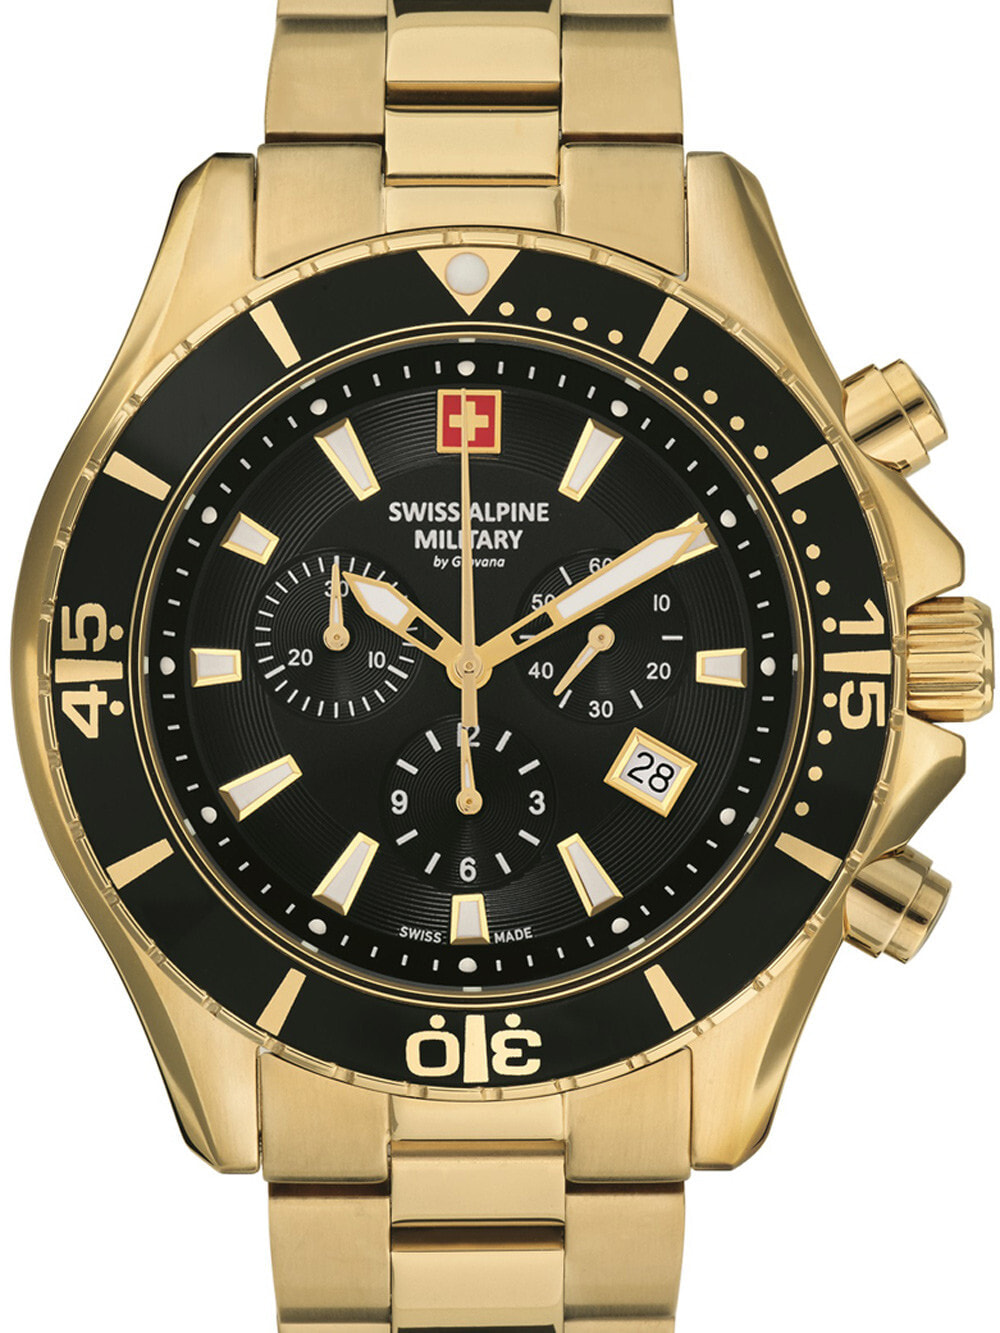 Мужские наручные часы с золотистым браслетом Swiss Alpine Military 7040.9117 chrono 45mm 10ATM